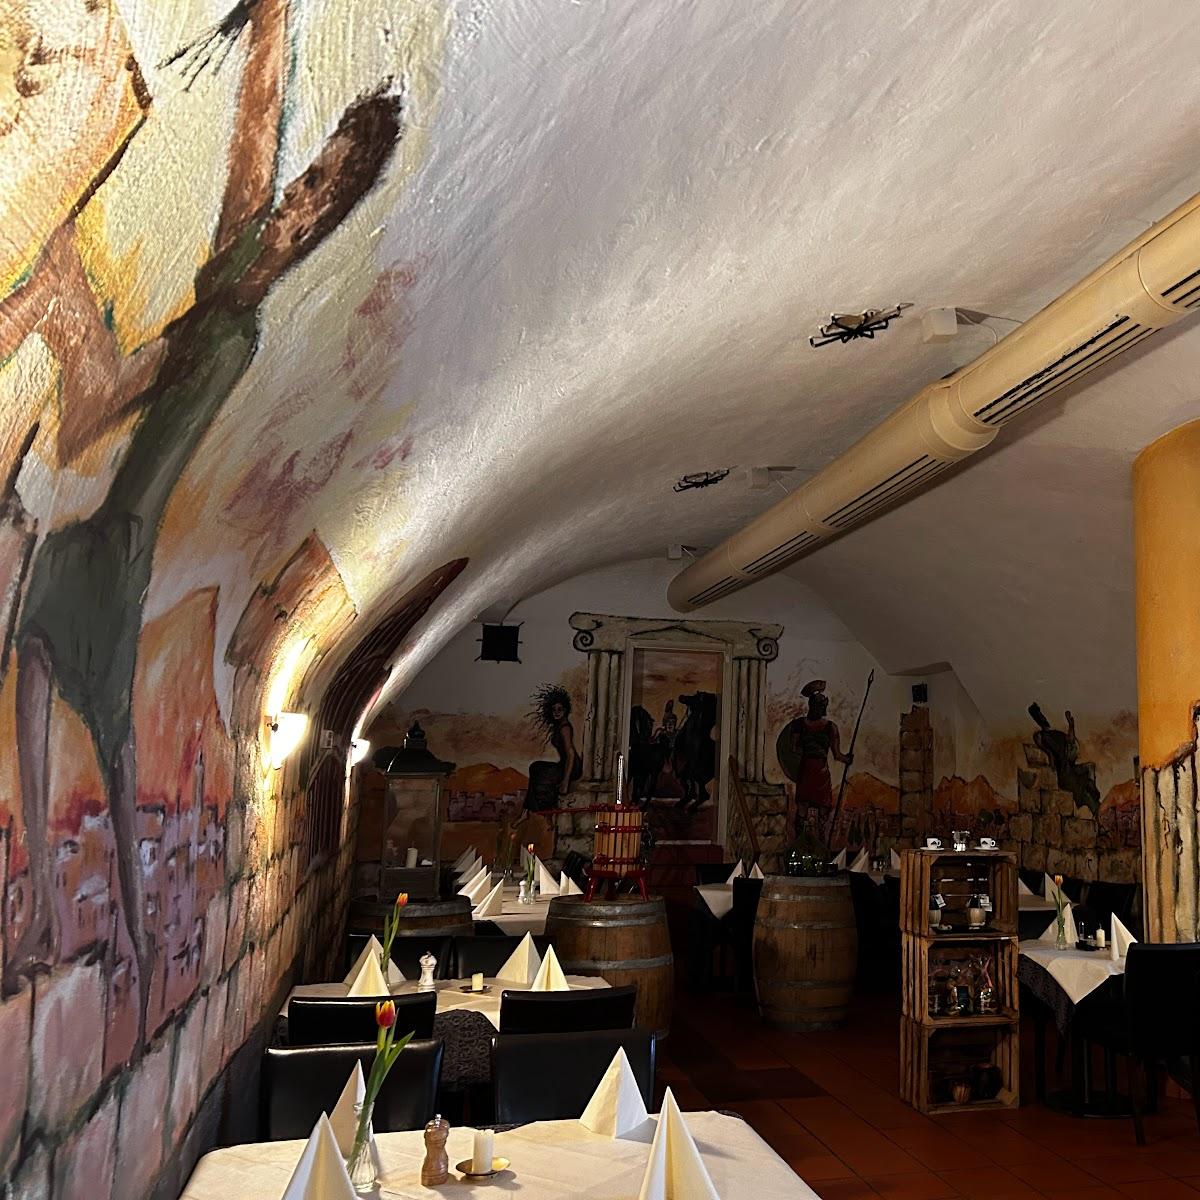 Restaurant "Il Brunello" in Lenzkirch